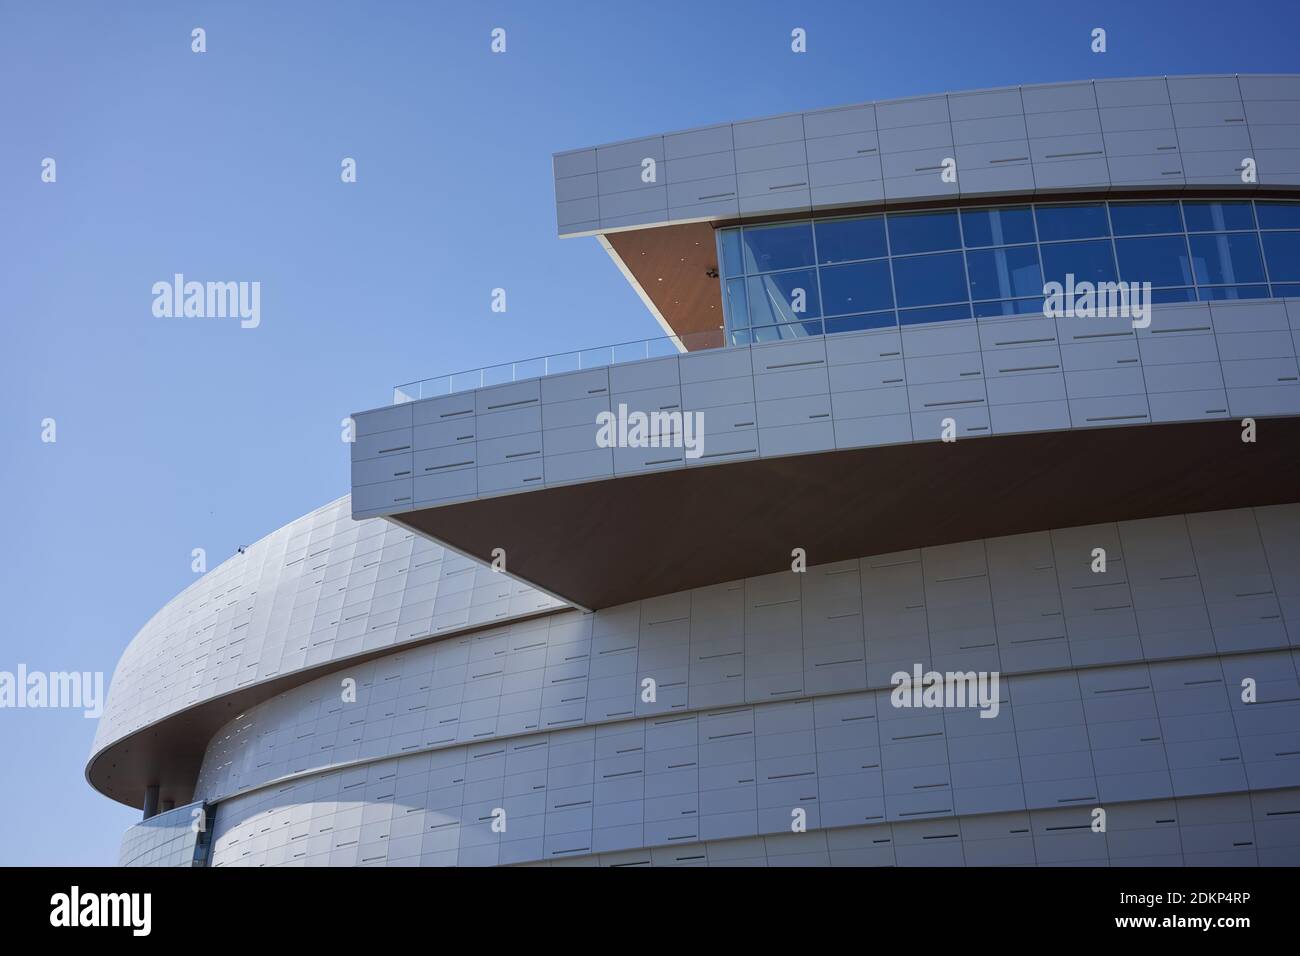 Architektonische Details des Chase Center, einer Indoor Arena im Mission Bay Viertel von San Francisco, Kalifornien. Stockfoto